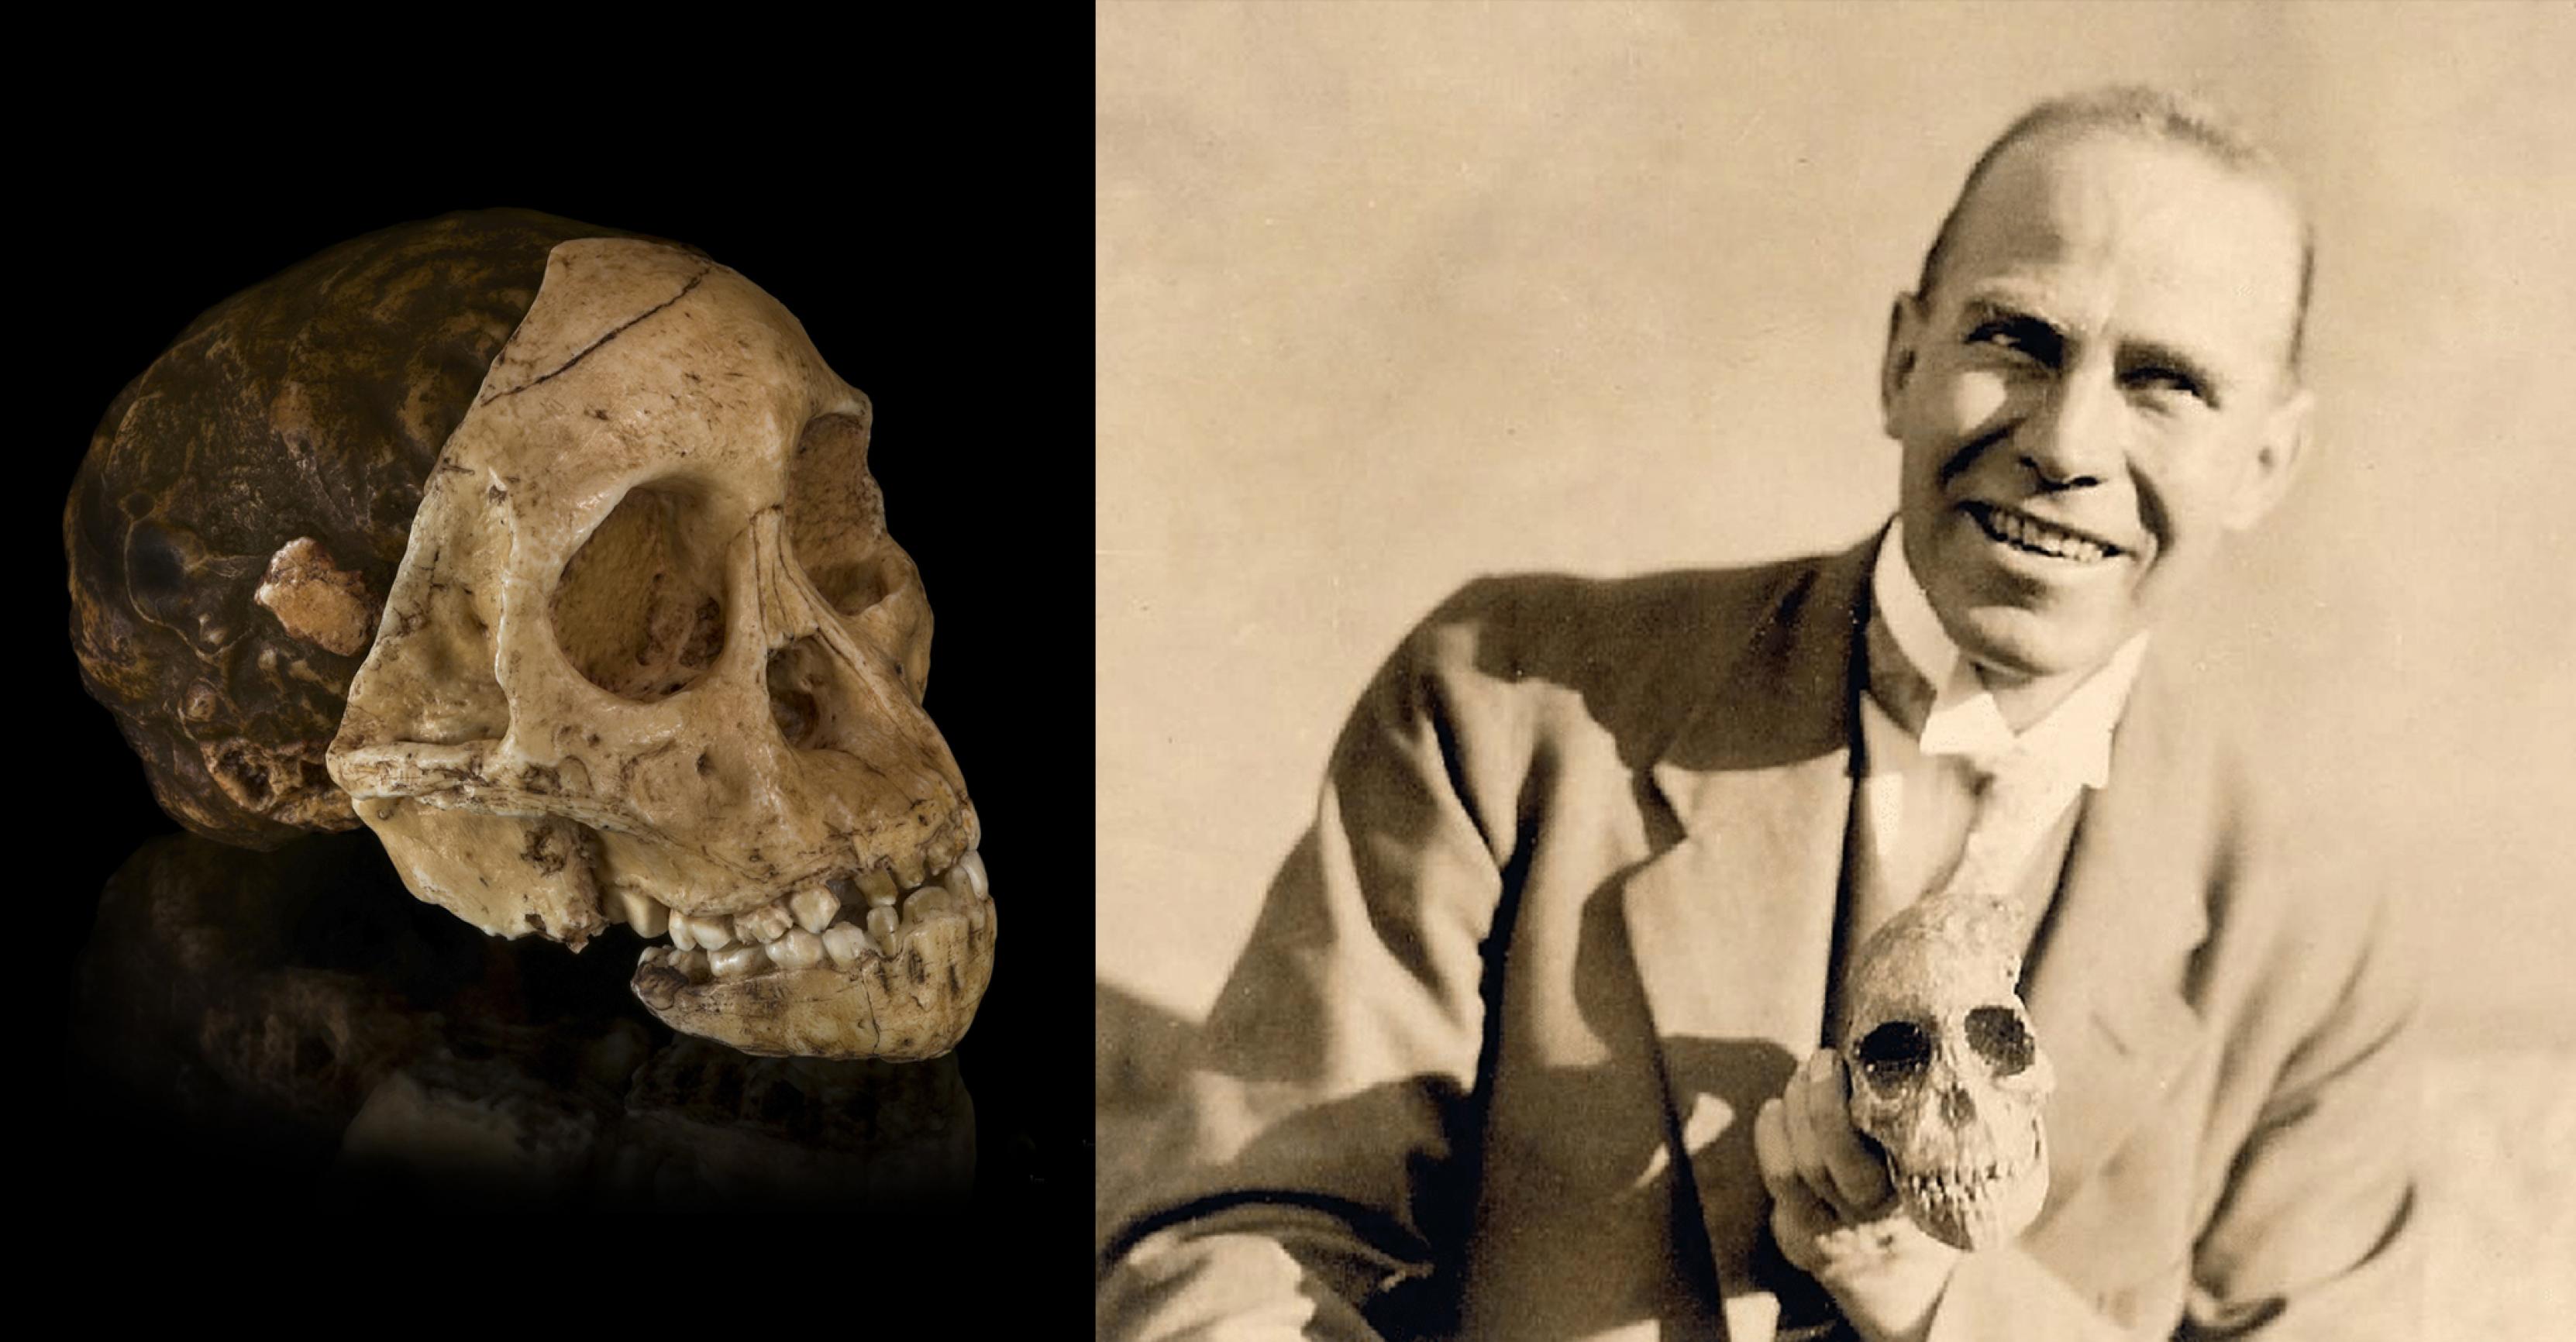 Hier sind zwei Fotos zu sehen: Links die knochenfarbene Versteinerung eines kindlich wirkenden, menschenähnlichen Gesichtsschädels, schräg von vorn und von der Seite, an dessen hinterem Teil sich Abschnitte eines versteinerten Gehirns erkennen lassen. Rechts das historische Foto eines jungen, lächelnden Mannes mit Jackett, der die links gezeigte Versteinerung in der linken Hand hält.